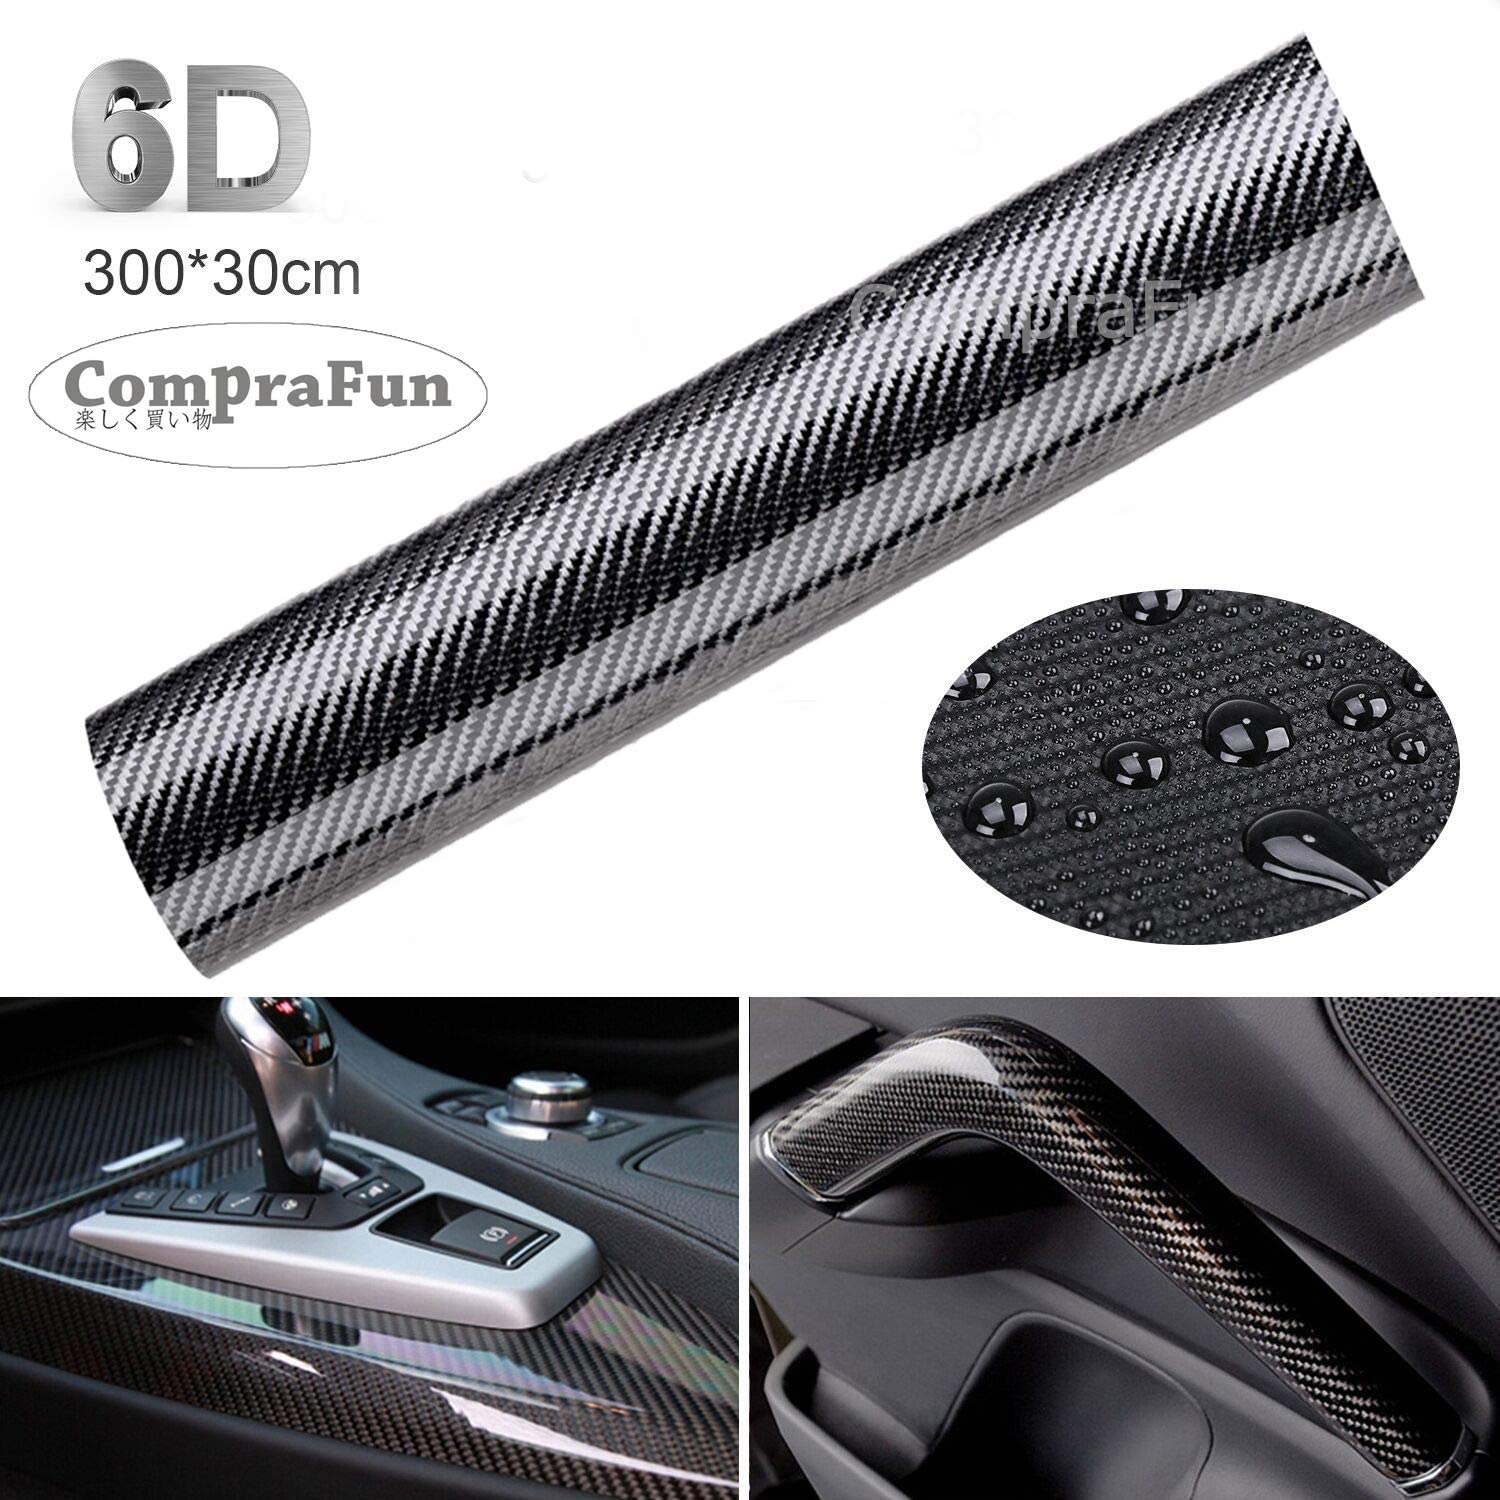 CompraFun 6D Pellicola Adesiva per Auto, 6D Fibra di Carbonio Rivestimento Adesivo Nero Car Sticker Wrapping Auto e Moto